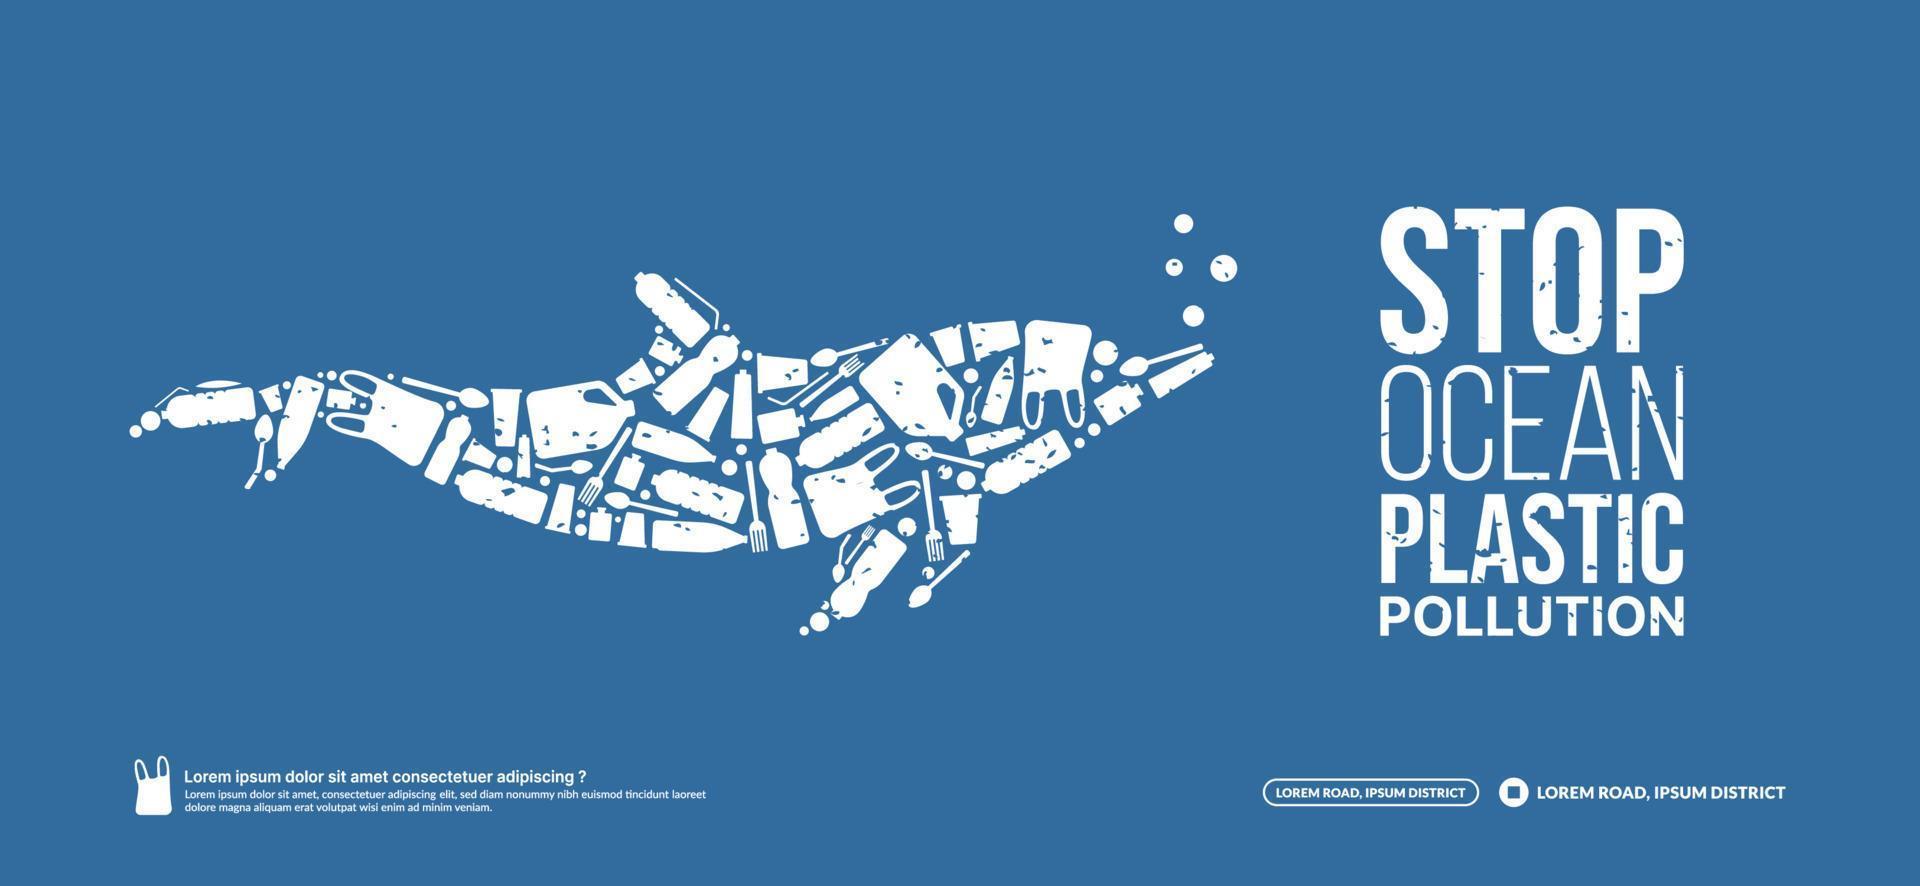 concetto di fermare l'inquinamento da plastica dell'oceano, il problema ambientale dell'oceano, il delfino animale marino composto da cucciolate di plastica, la giornata mondiale dell'oceano vettore